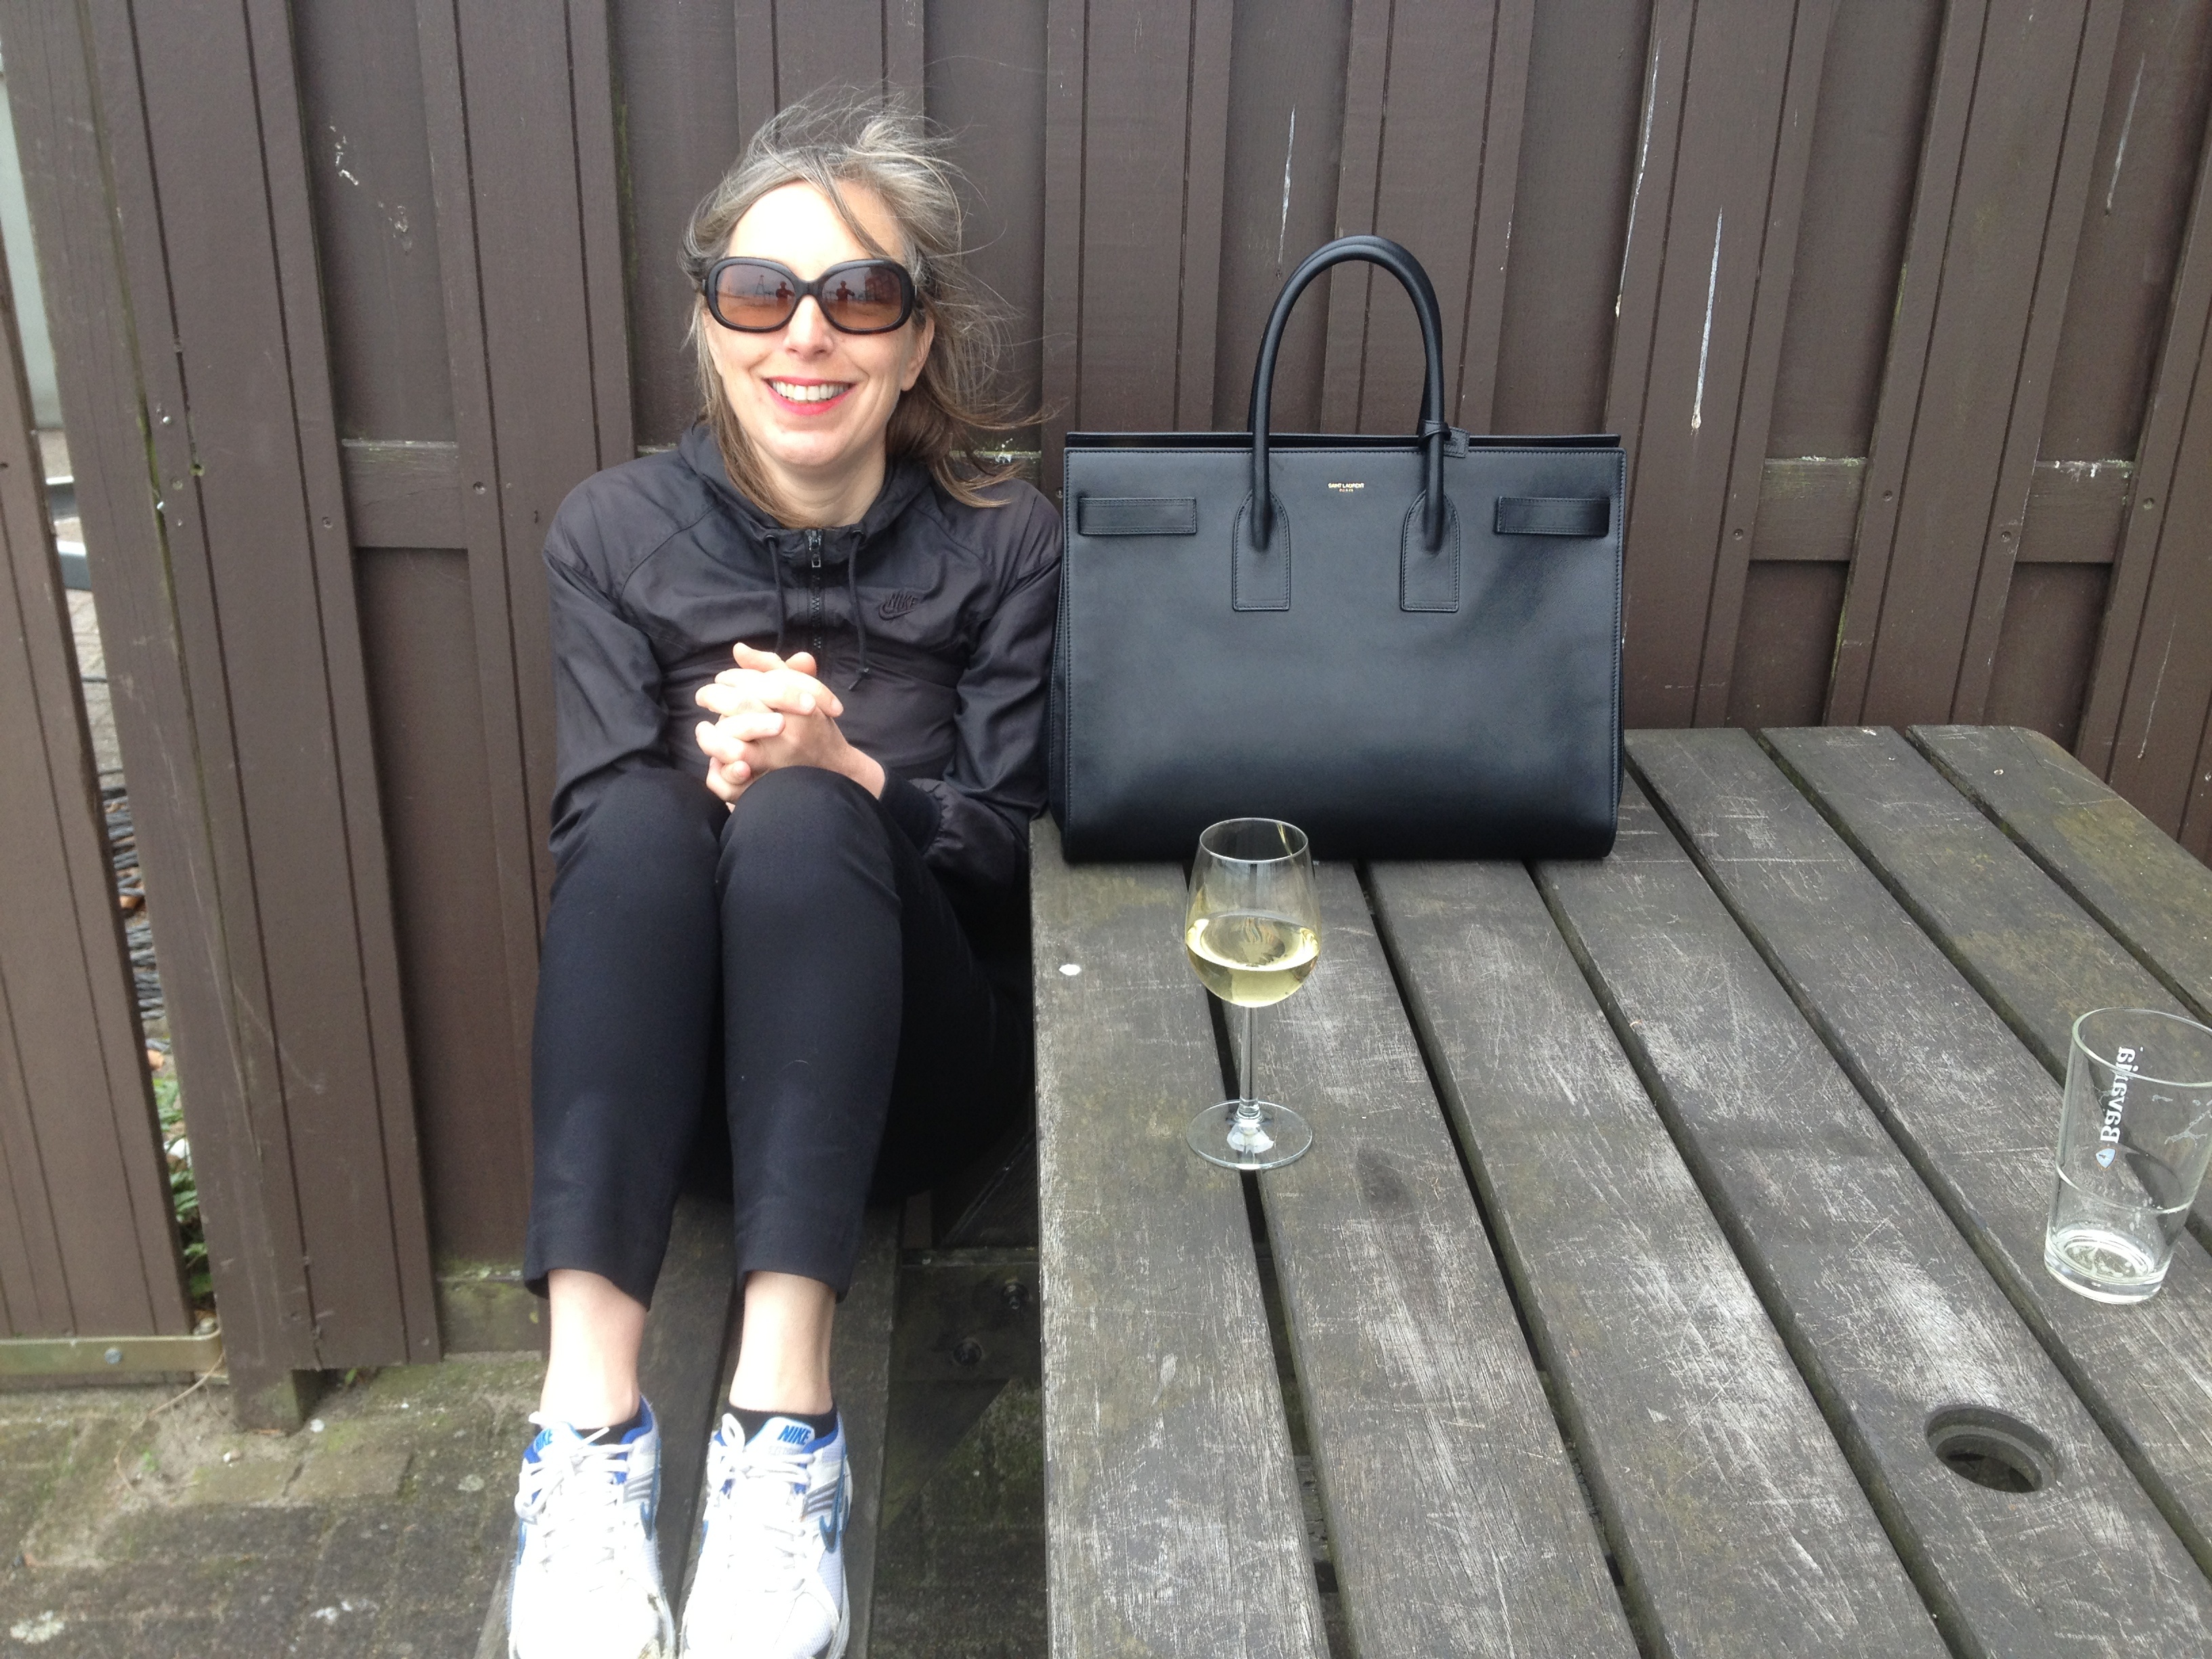 The Ultimate Bag Guide: The Saint Laurent Sac de Jour Bag - PurseBlog